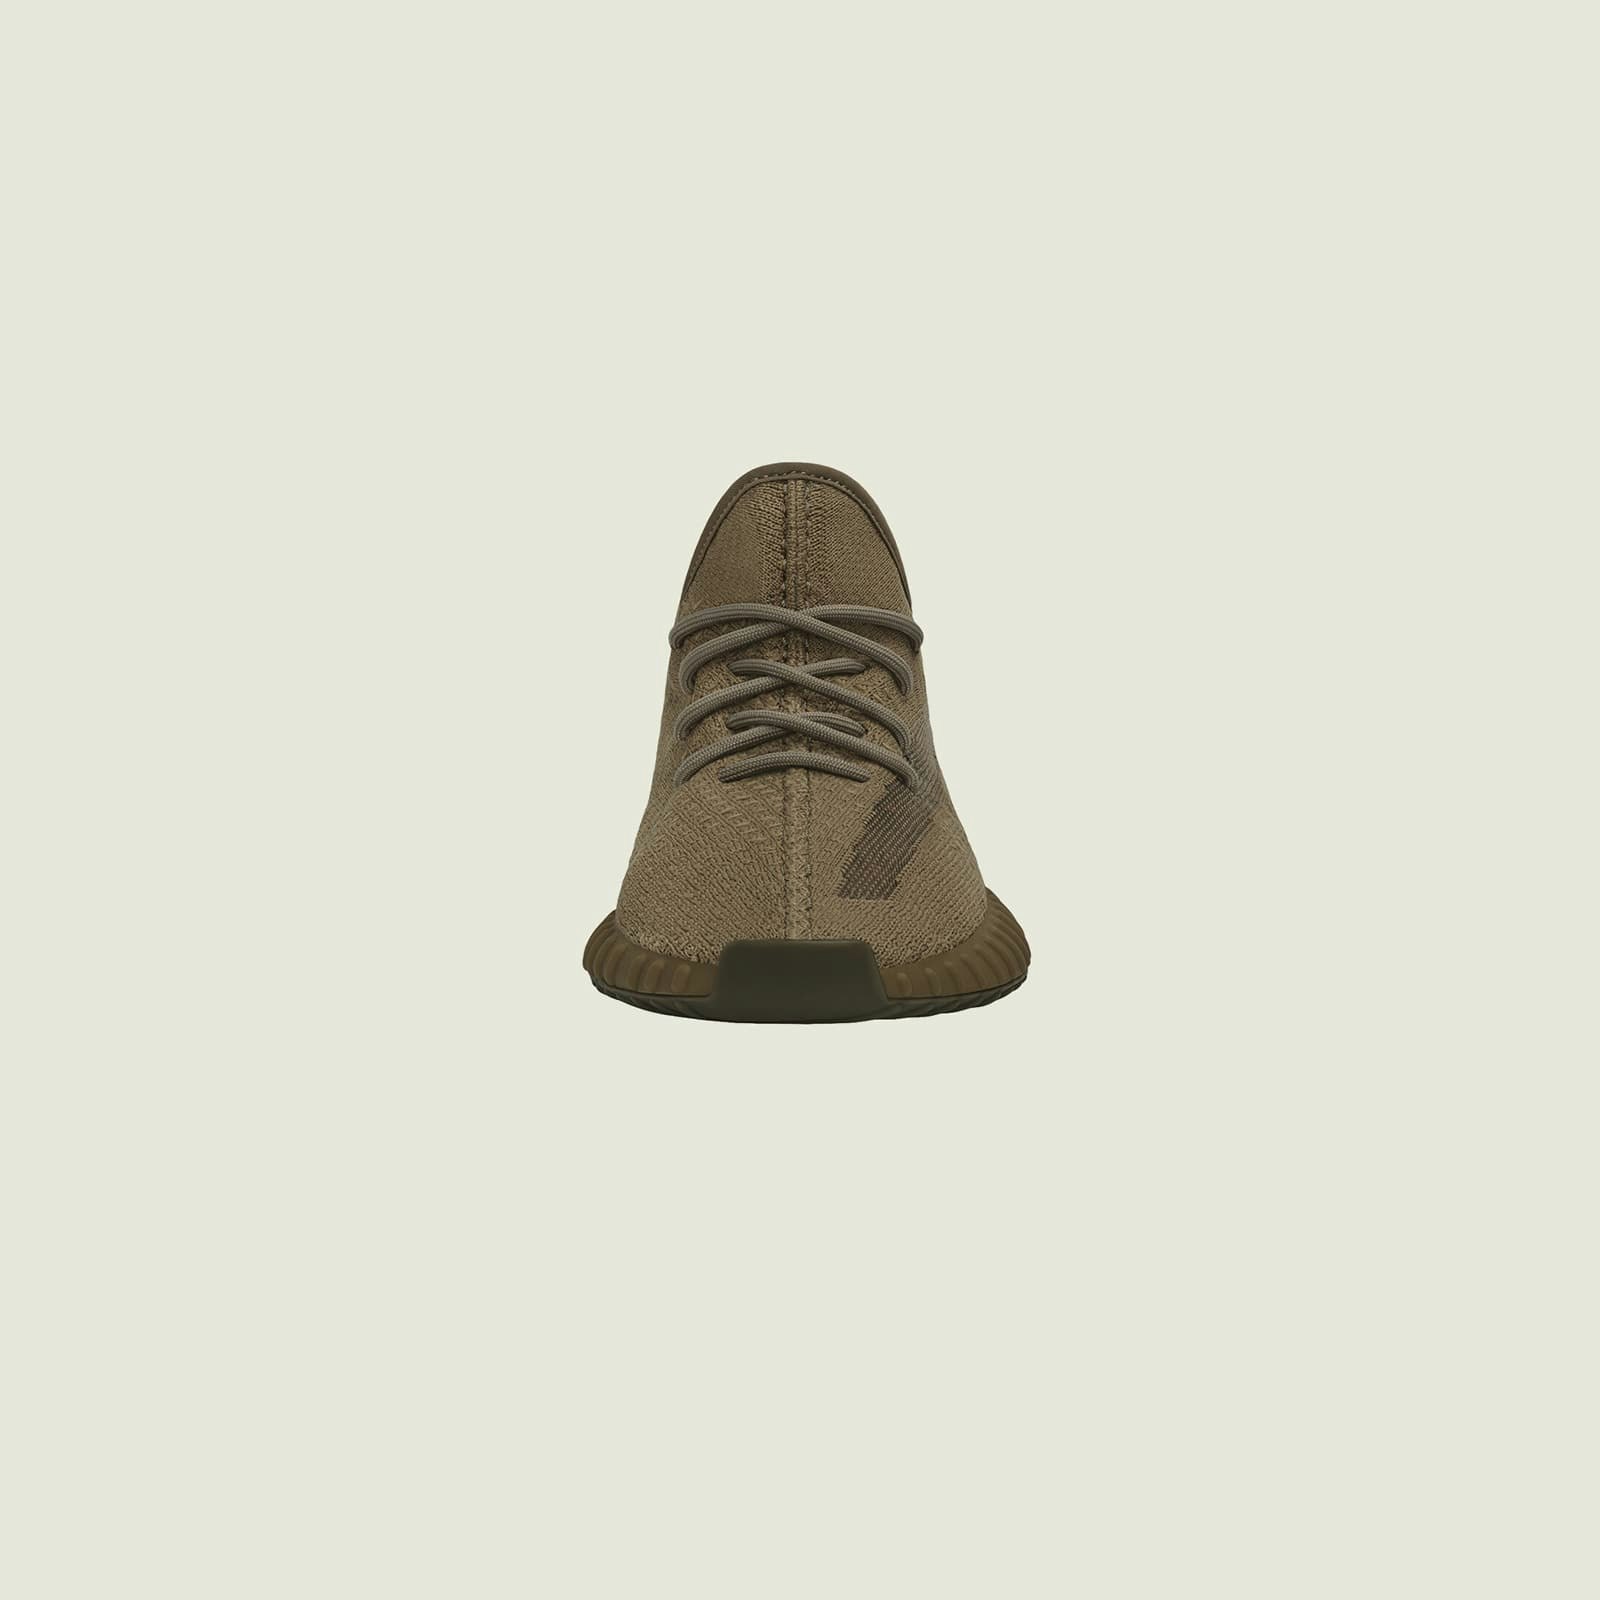 adidas Yeezy Boost 350 V2 "Earth"